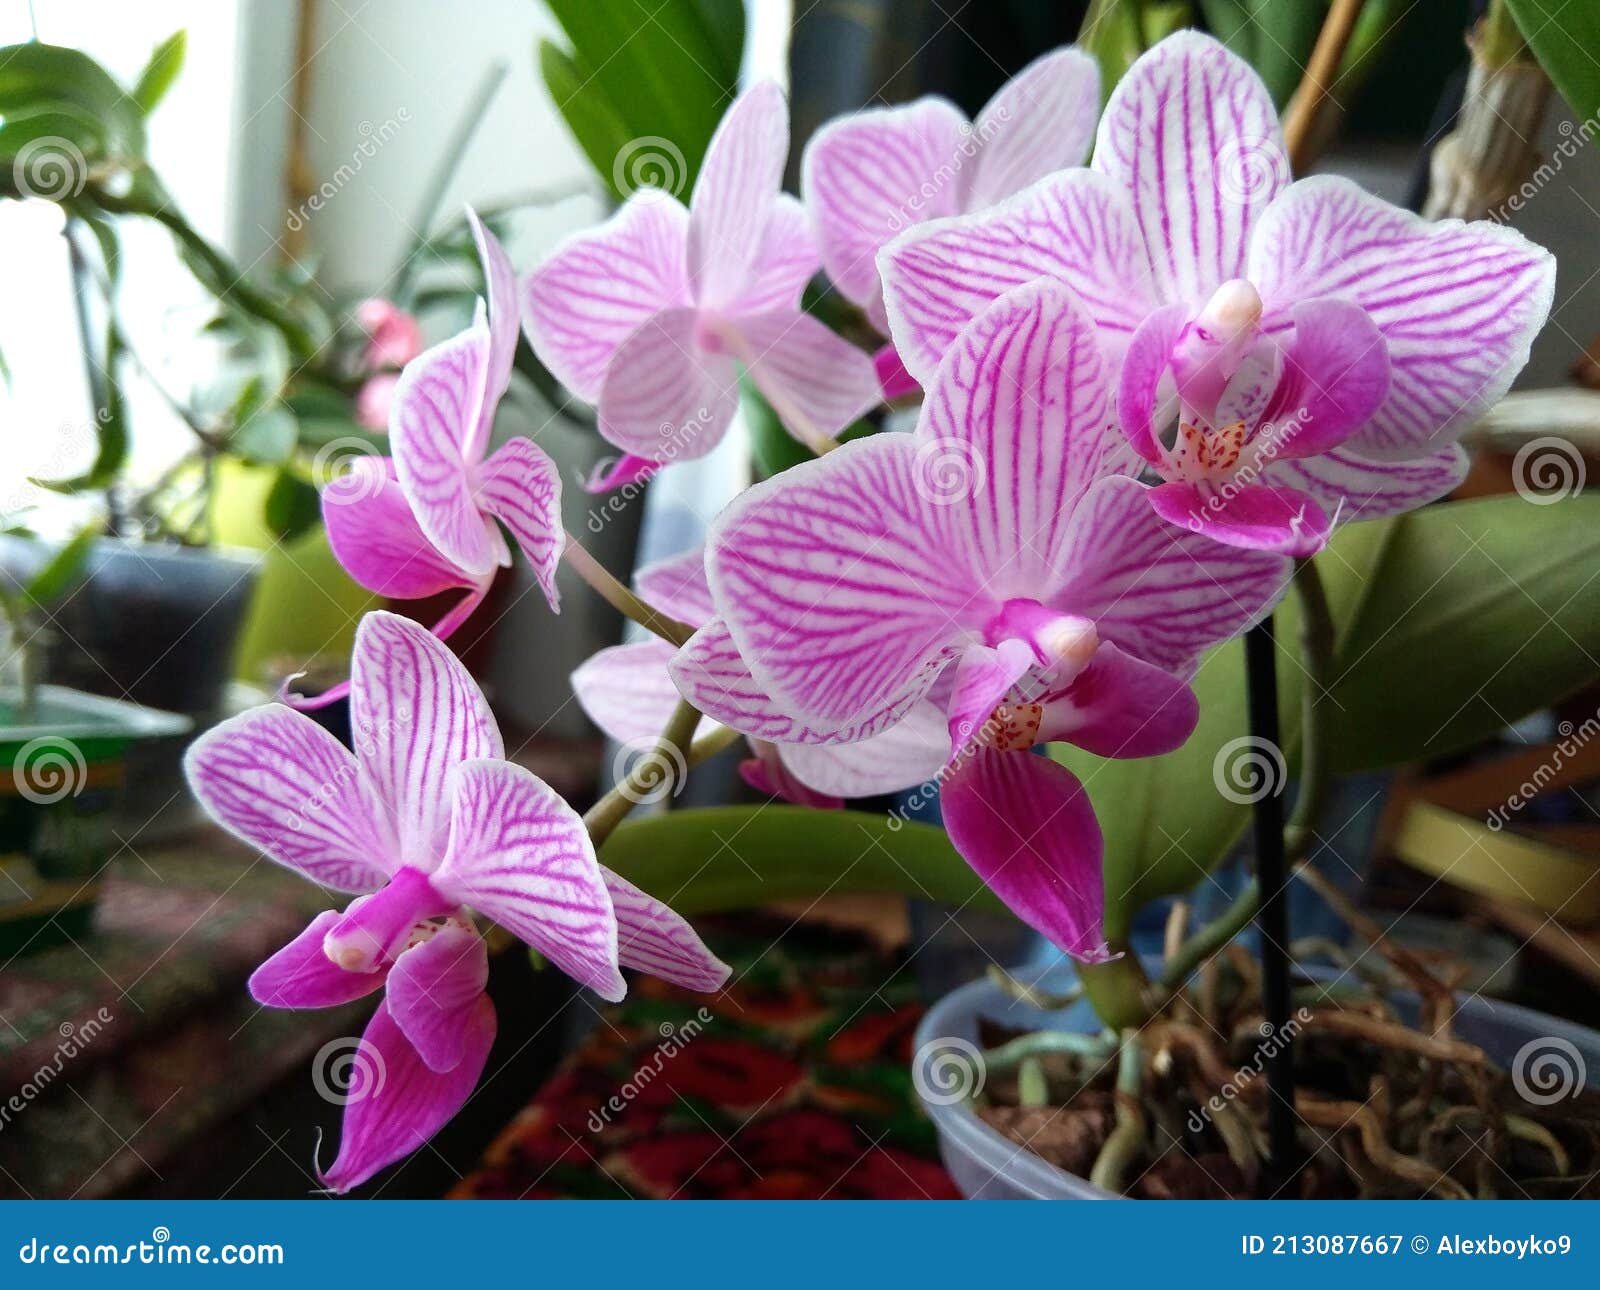 tunnel hoog waarheid Bloemen Van Mini-orchideeën. Orchidee in Roze Strepen Thuis. Paars.  Huisplanten. Tropische Bloemen in Huis Stock Afbeelding - Image of helder,  bloemen: 213087667